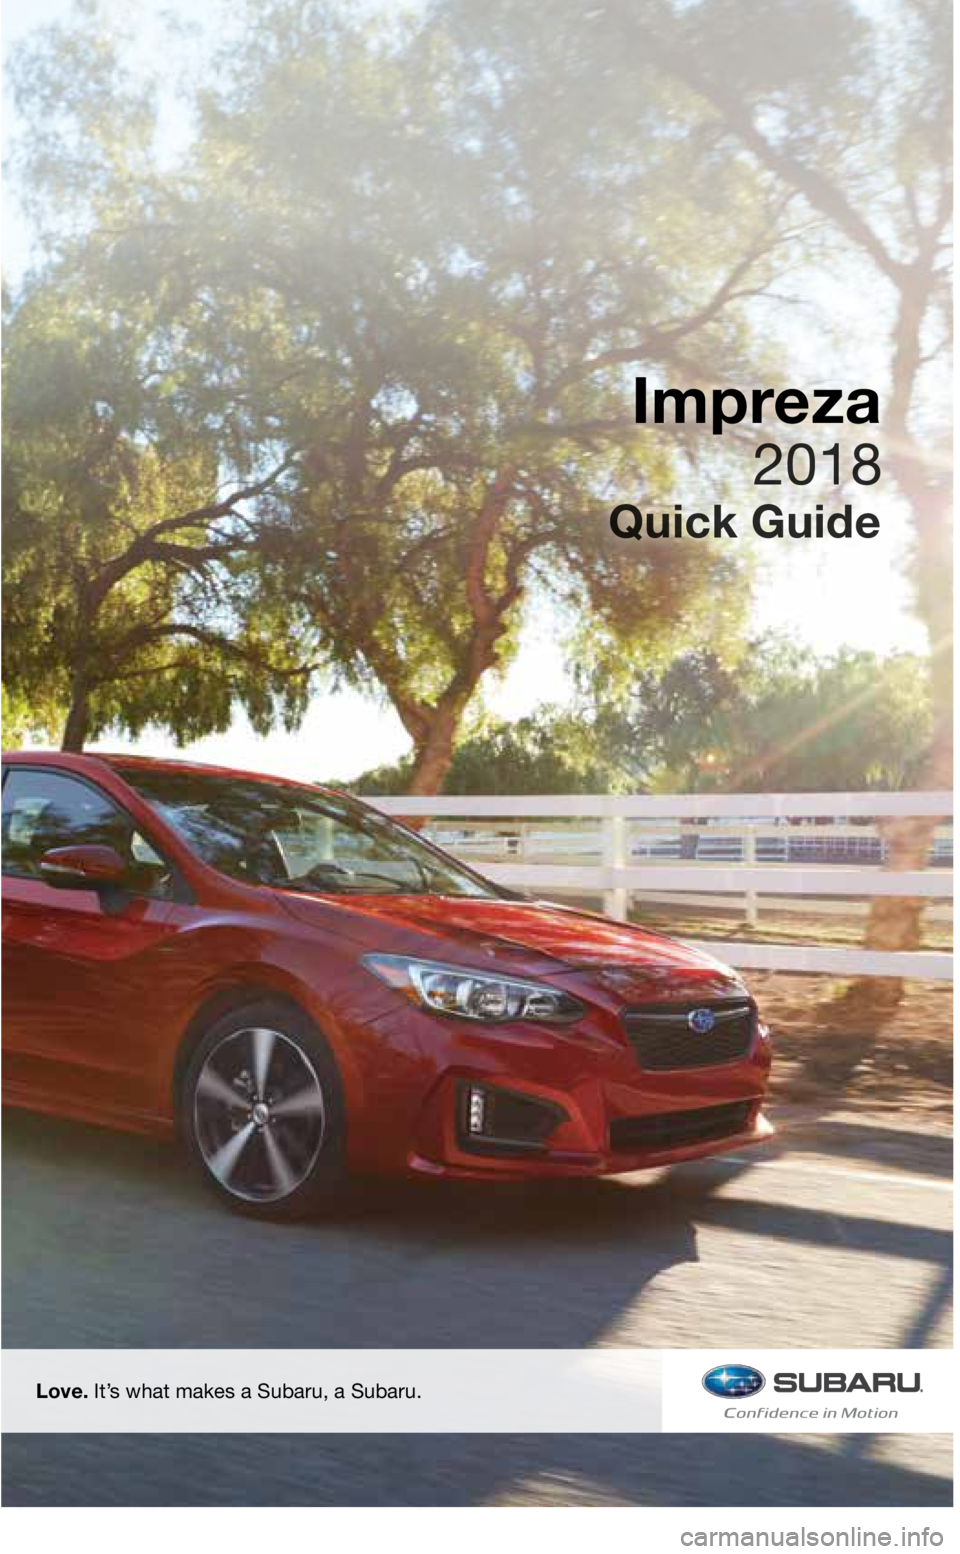 SUBARU IMPREZA 2018  Quick Guide Love. It’s what makes a Subaru, a Subaru.
Impreza
3220513_18b_Impreza_QRG_091217.indd   29/12/17   3:49 PM   
2018  
Quick Guide    